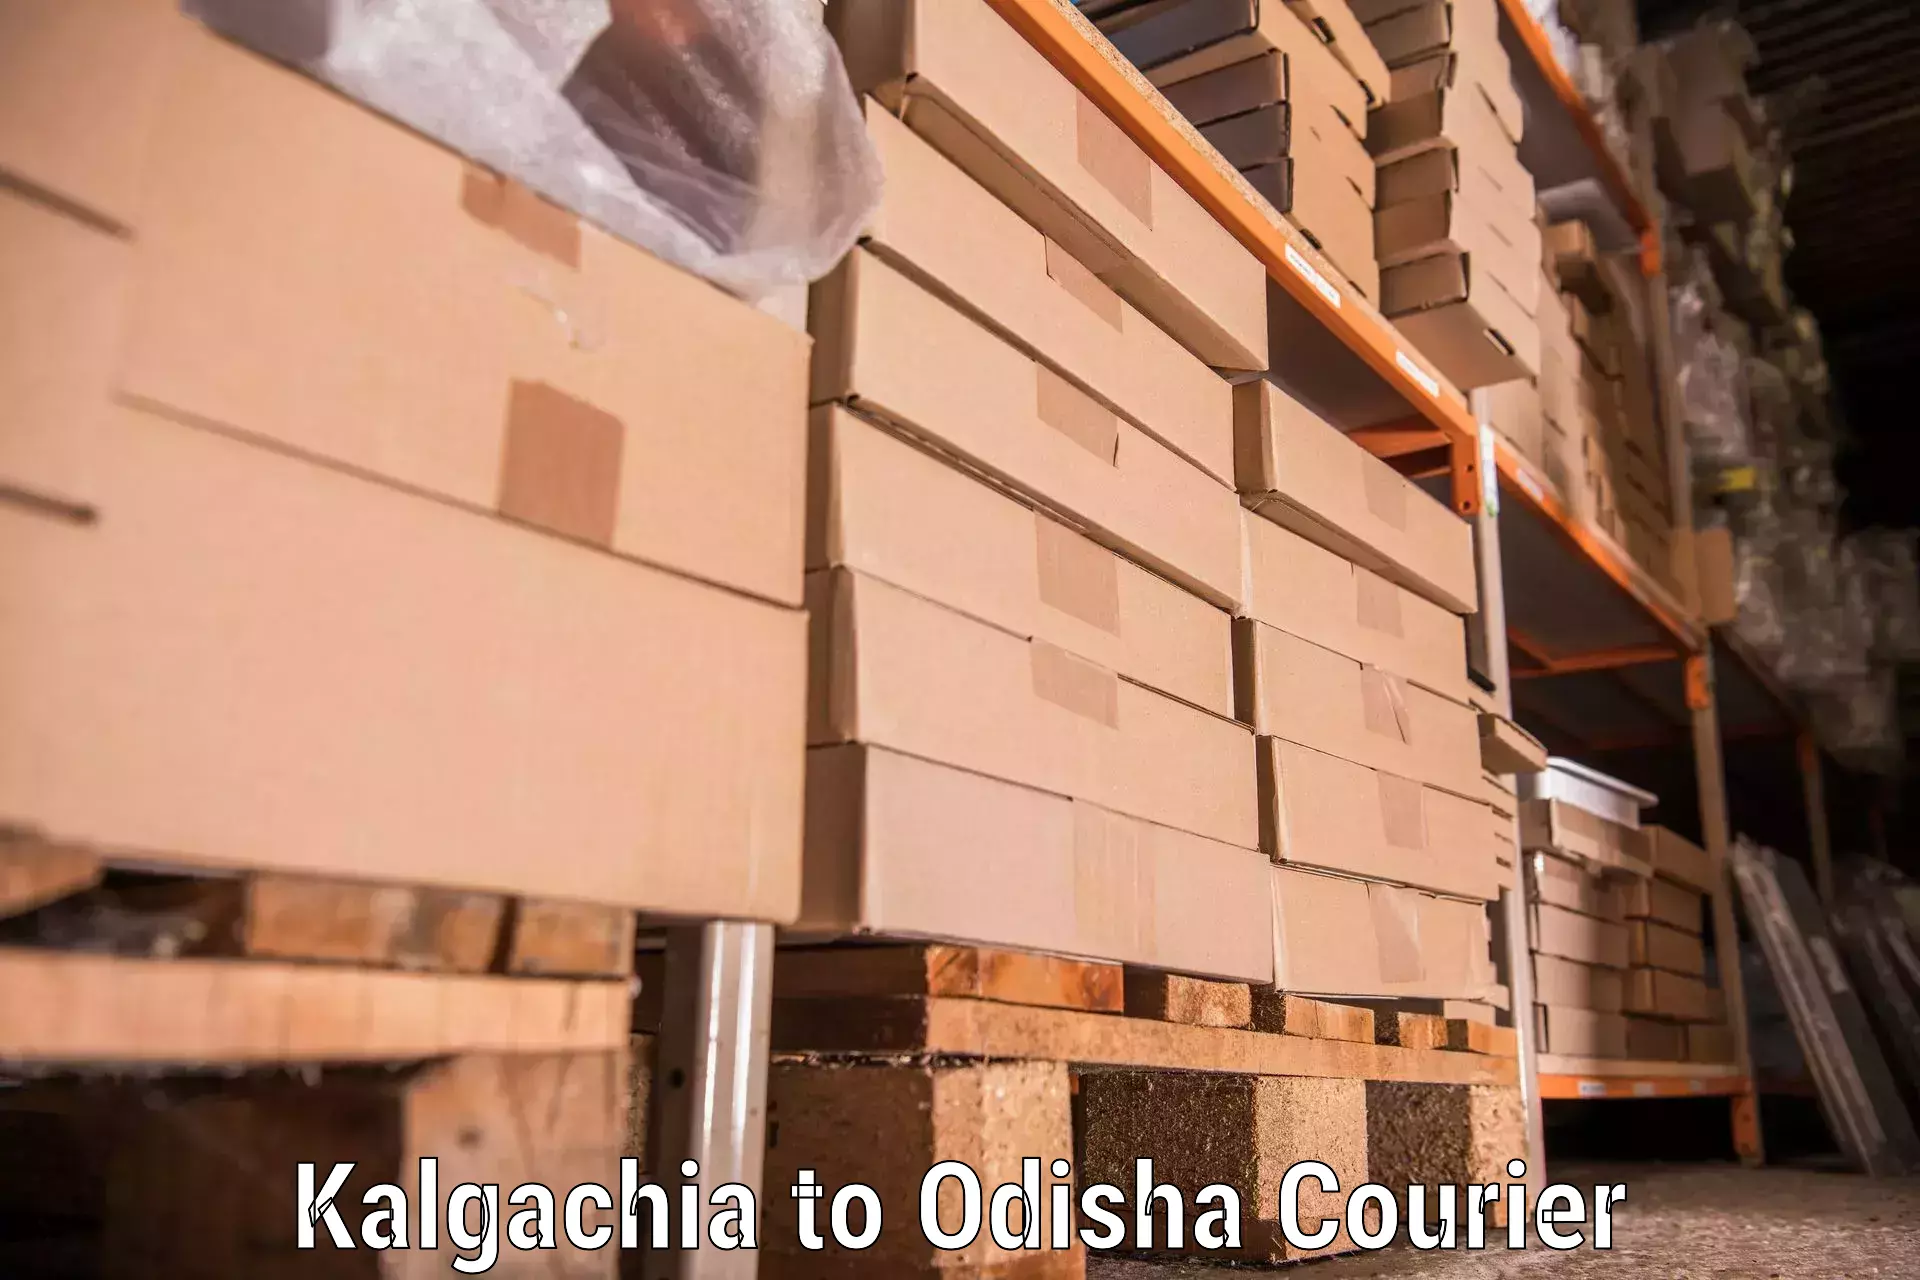 Furniture transport and storage Kalgachia to Kotapad